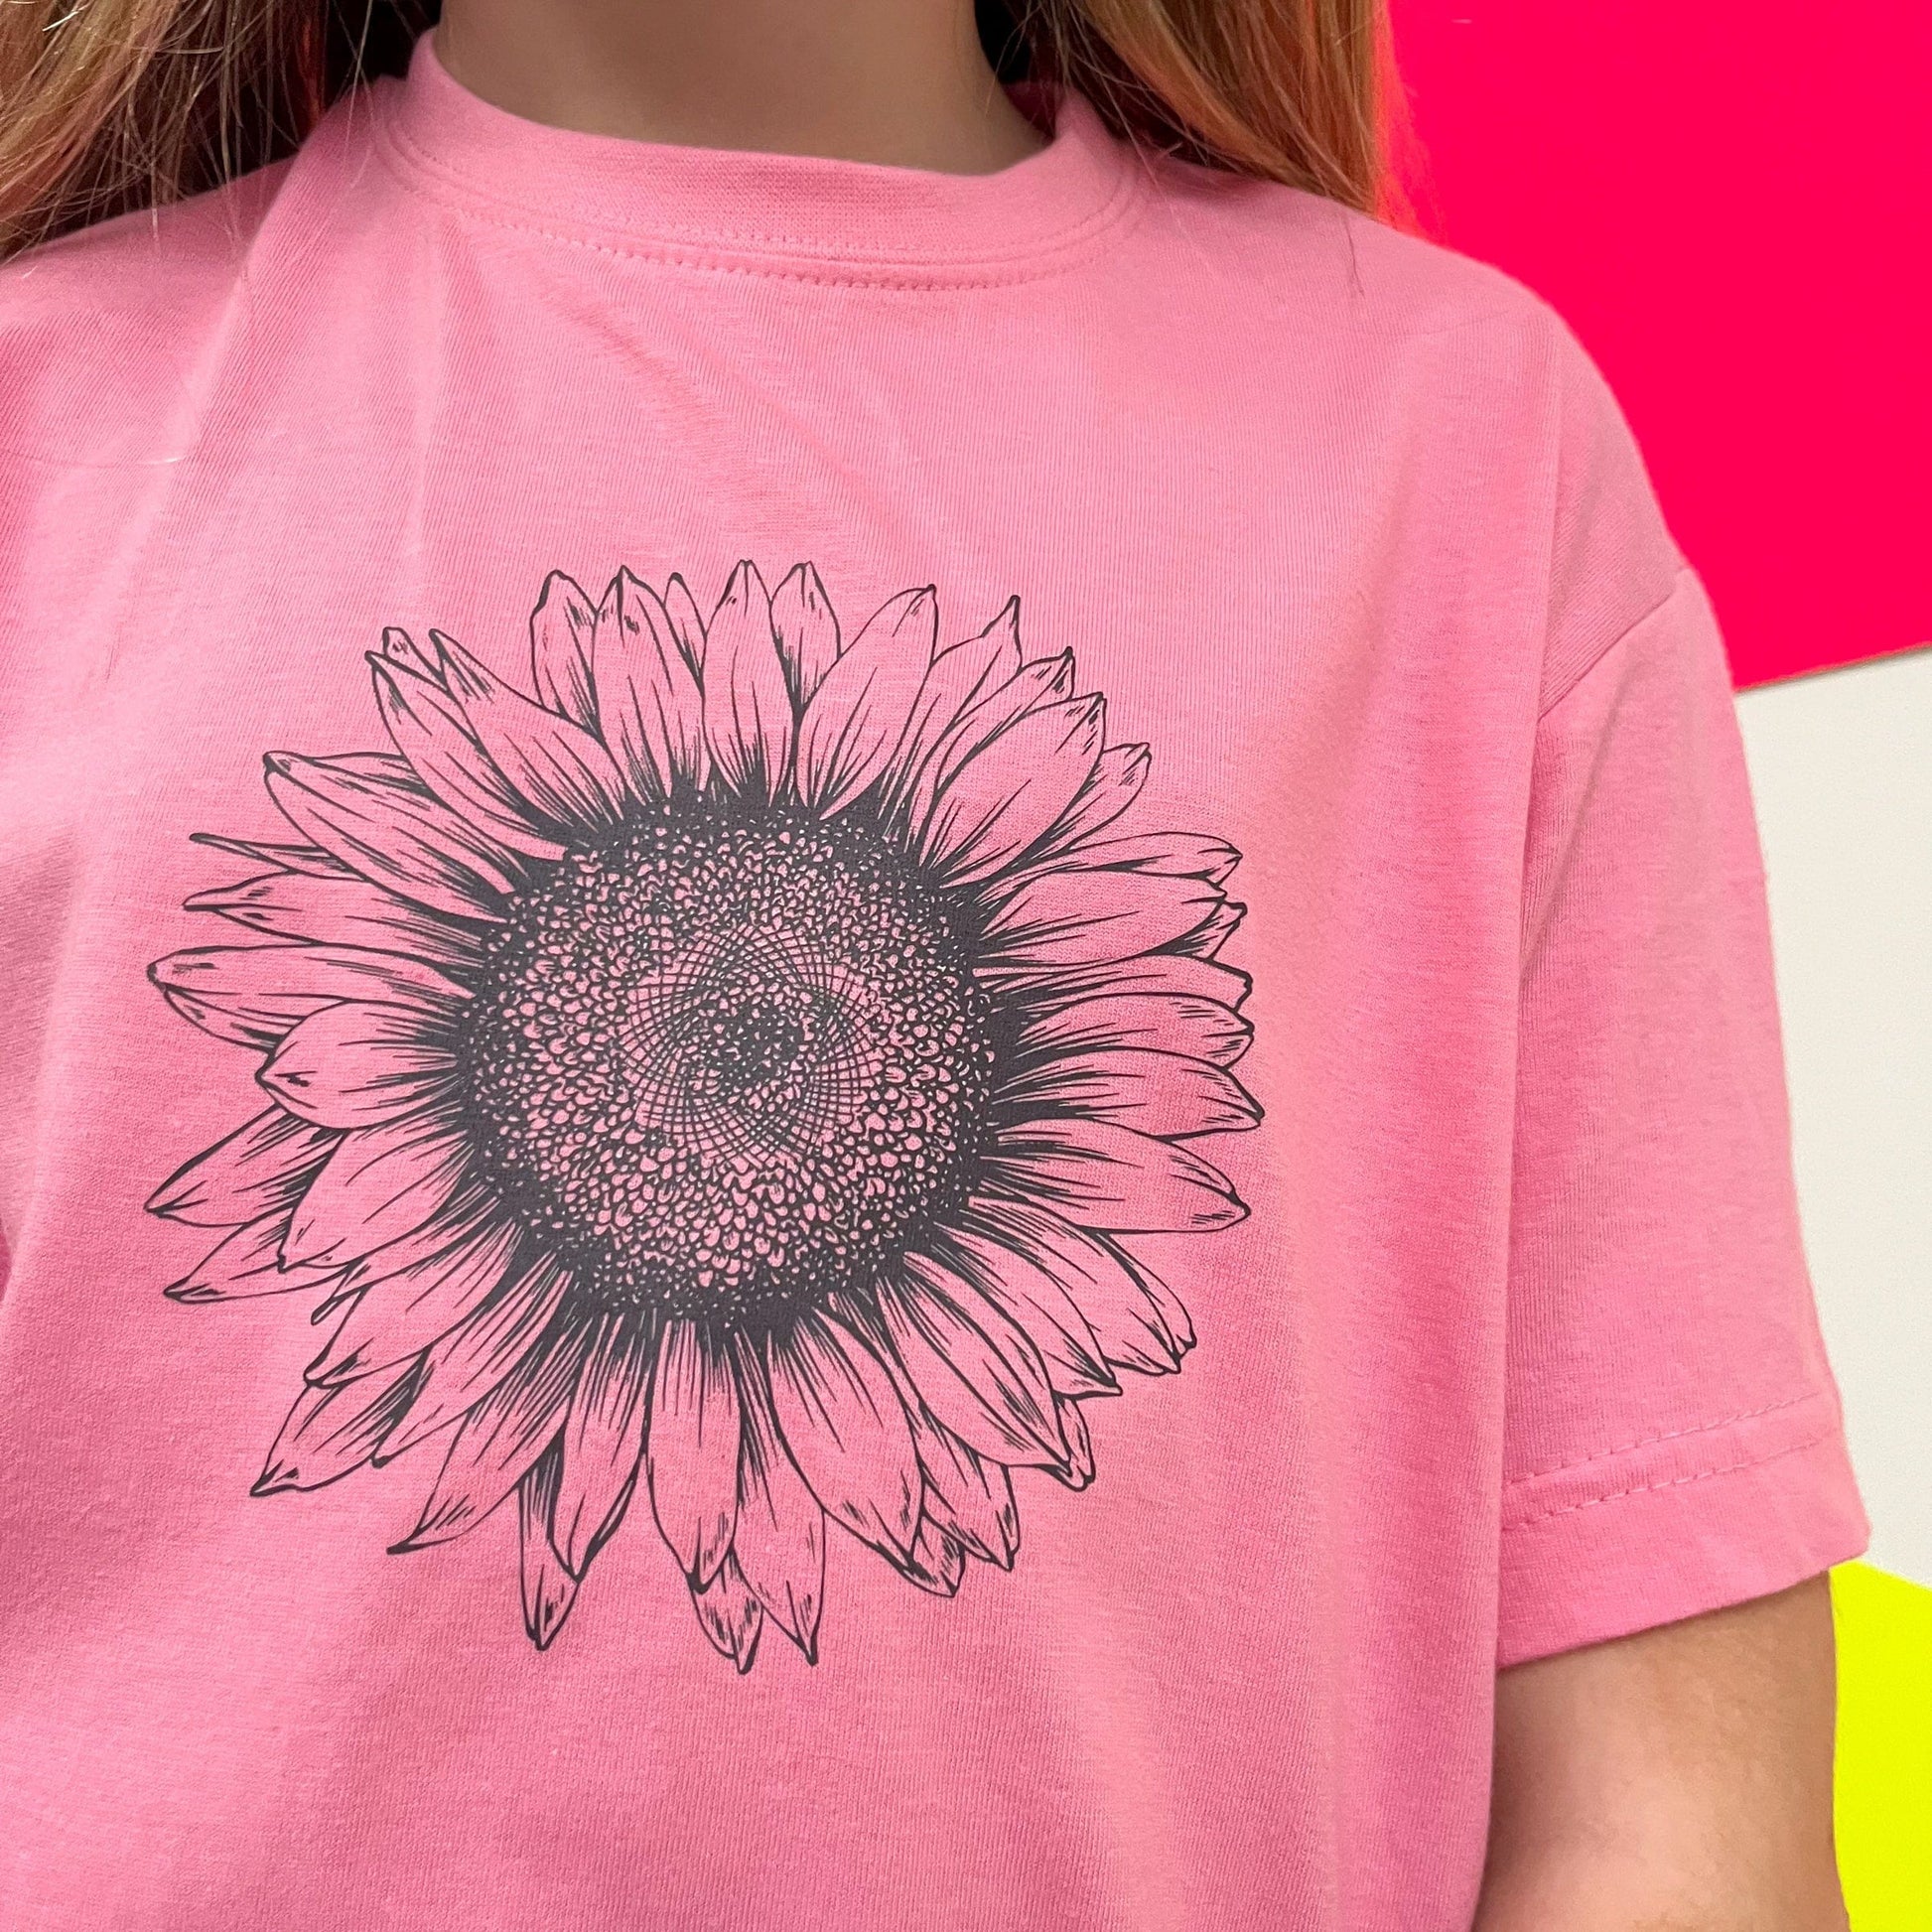 Kids Sunflower T Shirt, country girls sunflower top cute girls t shirt